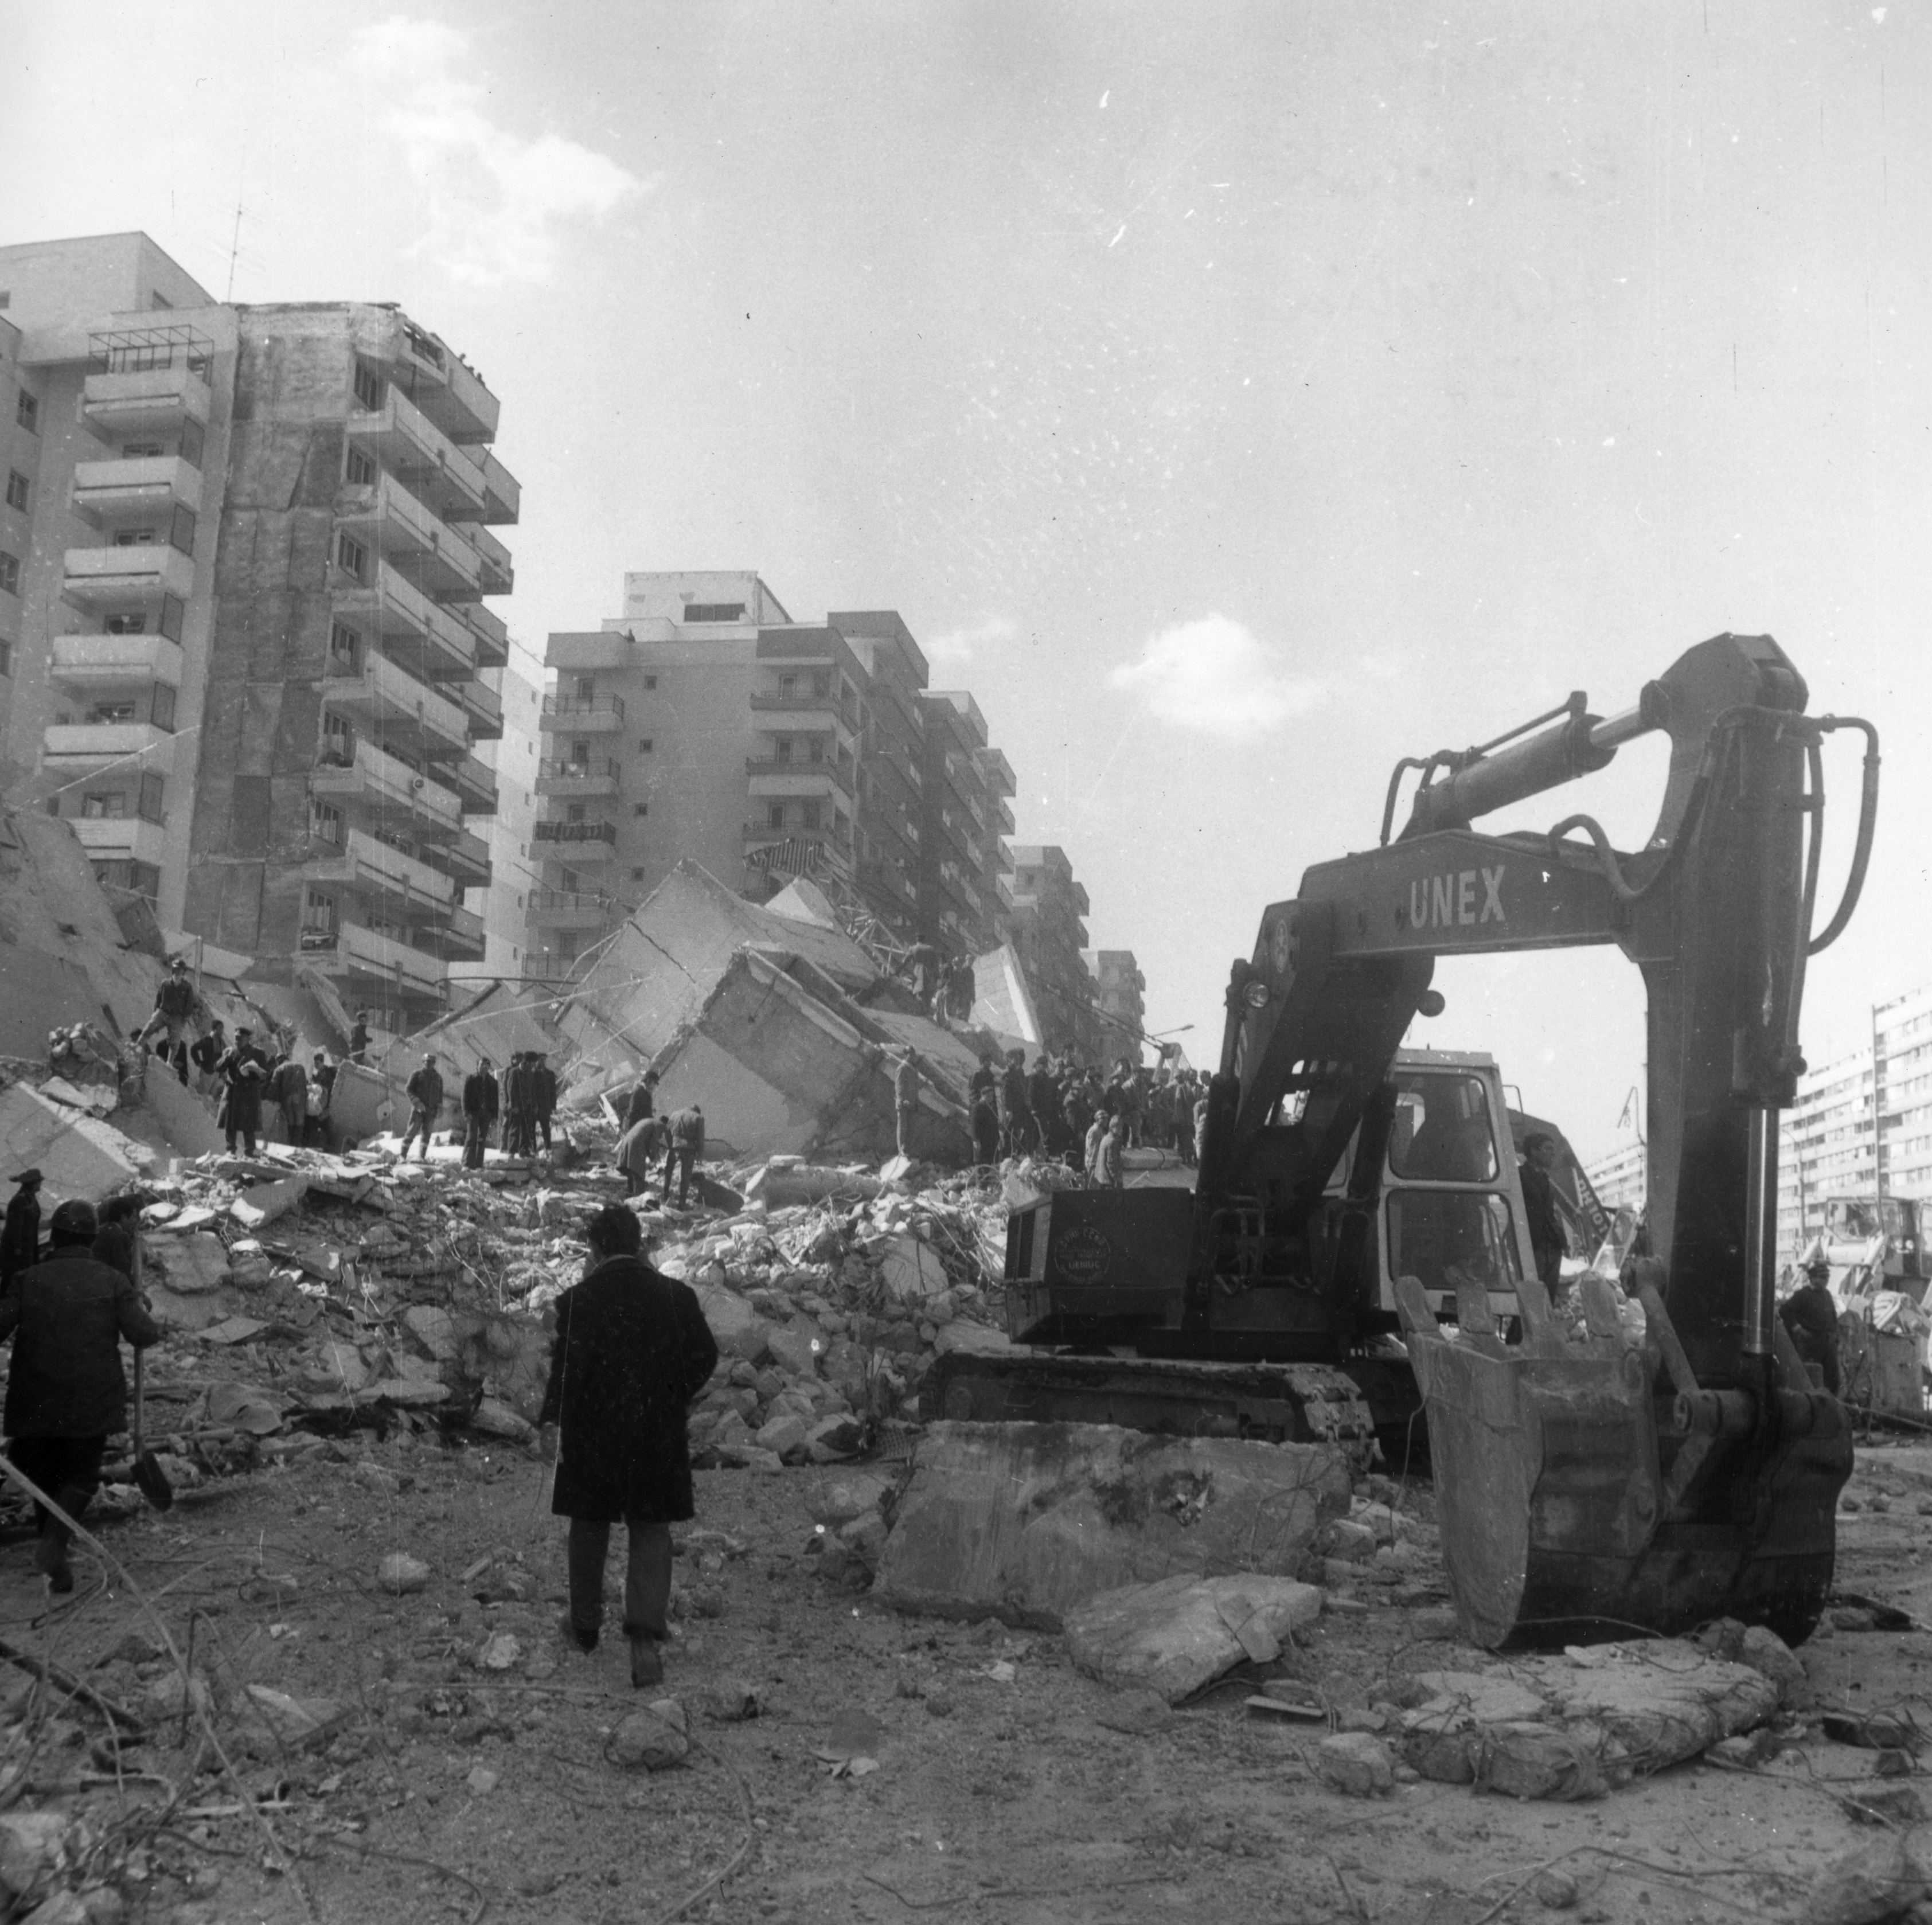 GALERIE FOTO. Cutremur 1977: Clădiri importante din Bucureşti distruse în urma seismului din 4 martie - Imaginea 1